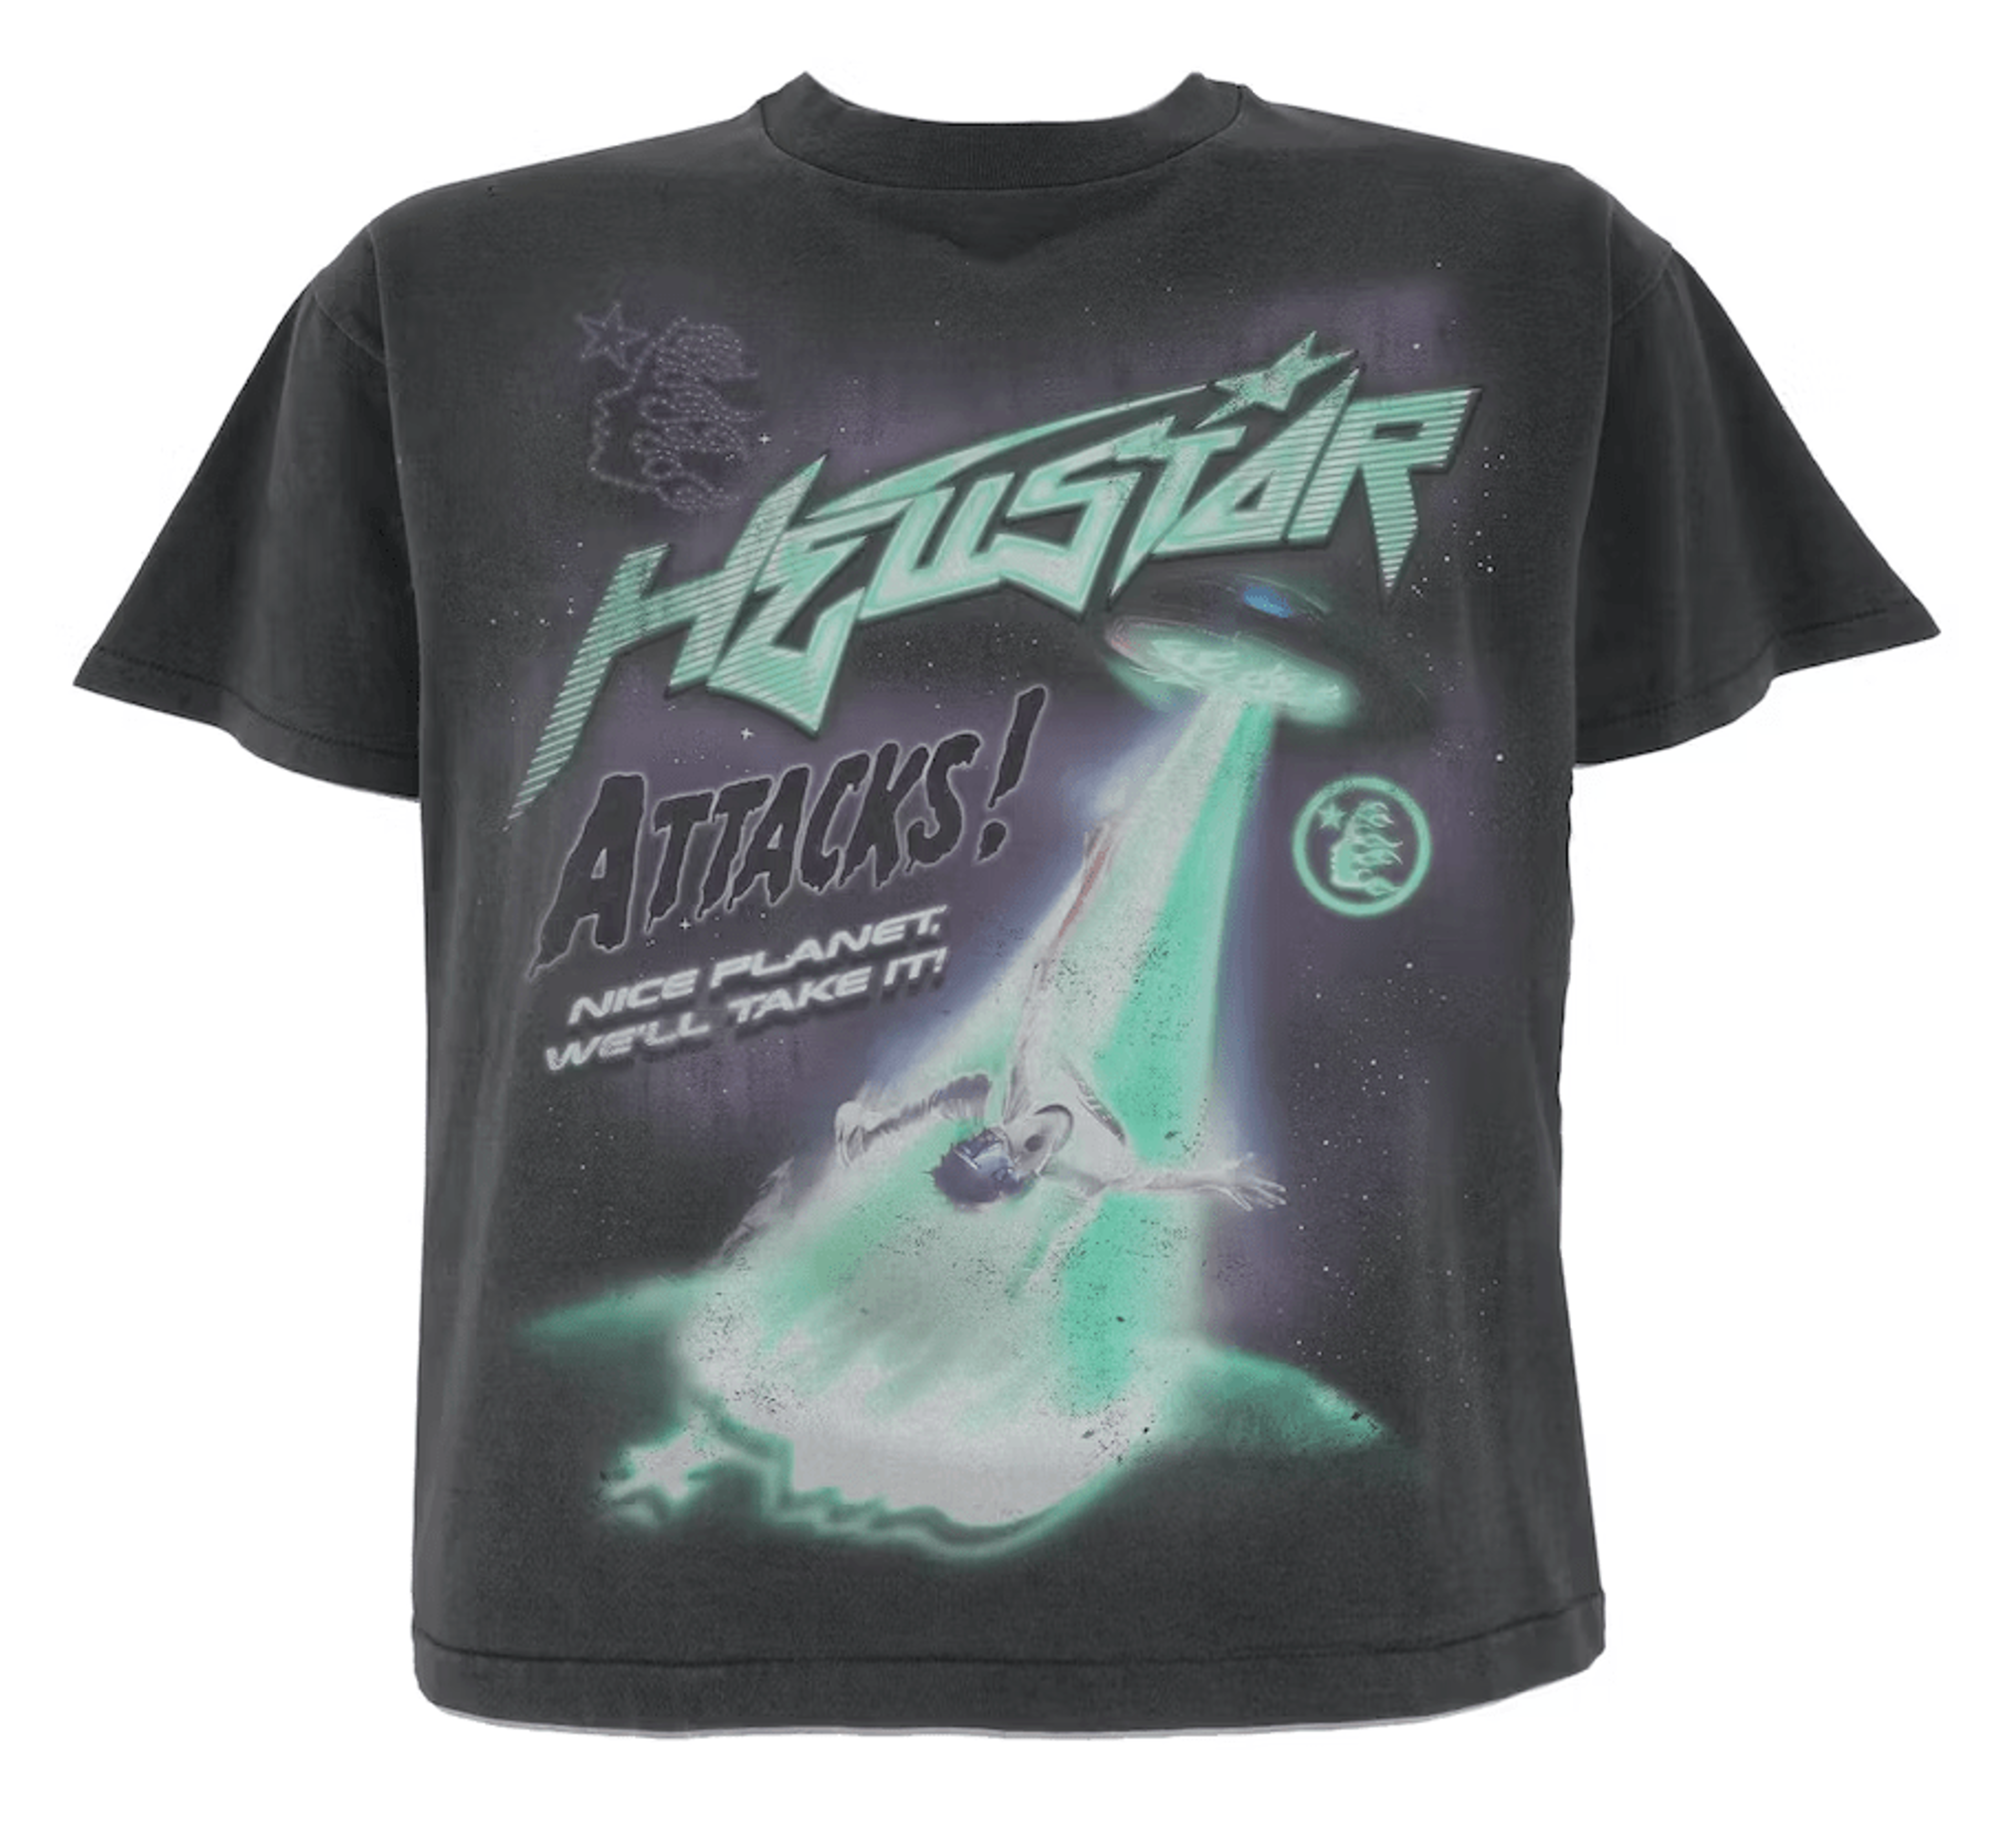 Hellstar Studios Attacks Short Sleeve Tee Shirt Black